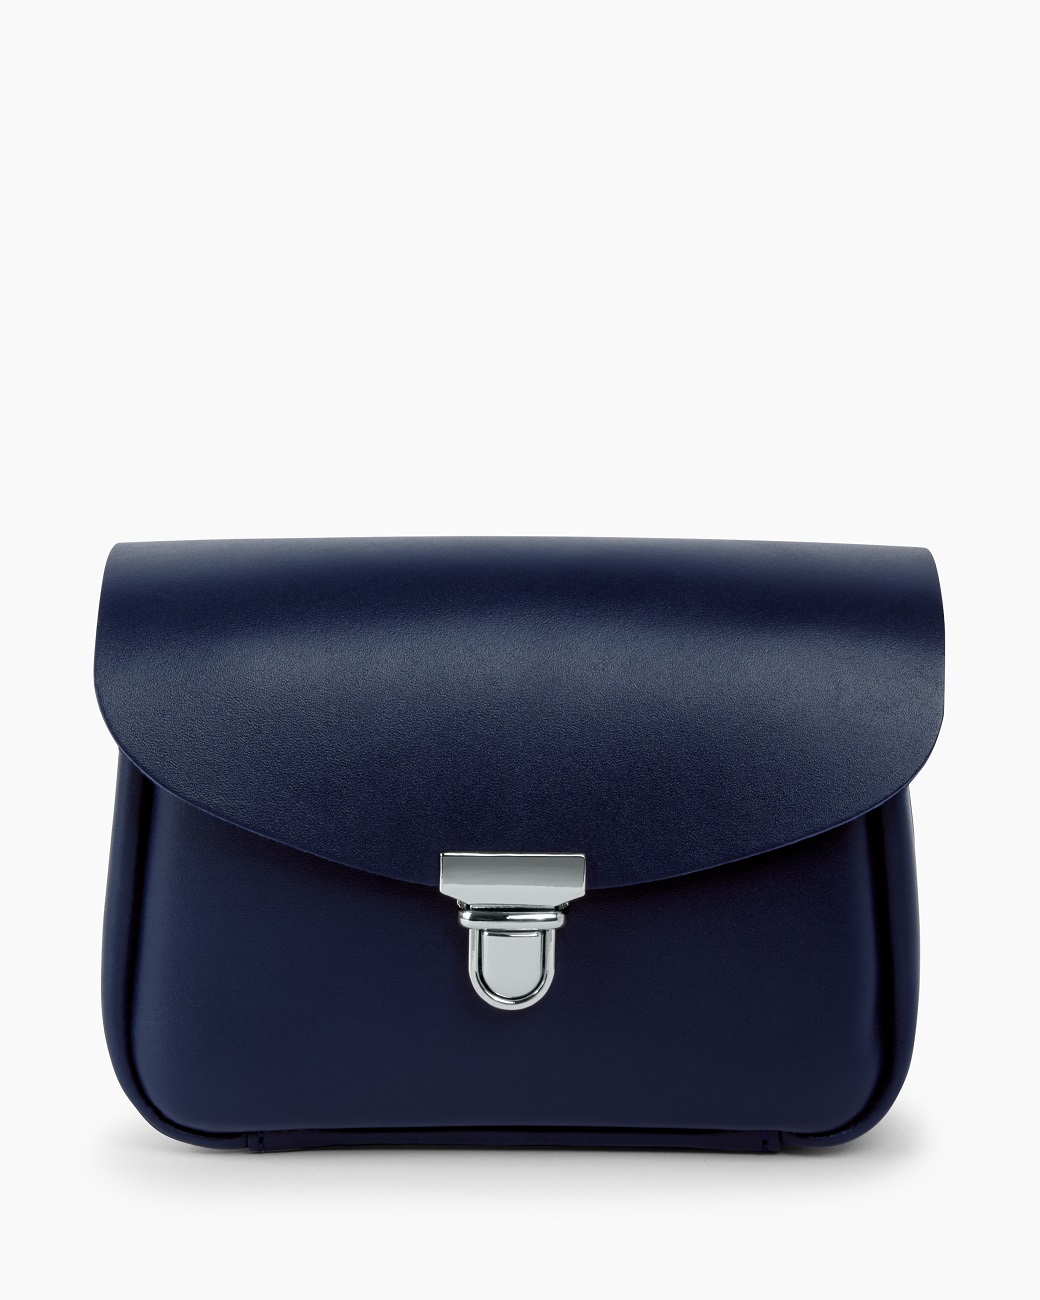 Женская поясная сумка из натуральной кожи синяя A001 sapphire mini